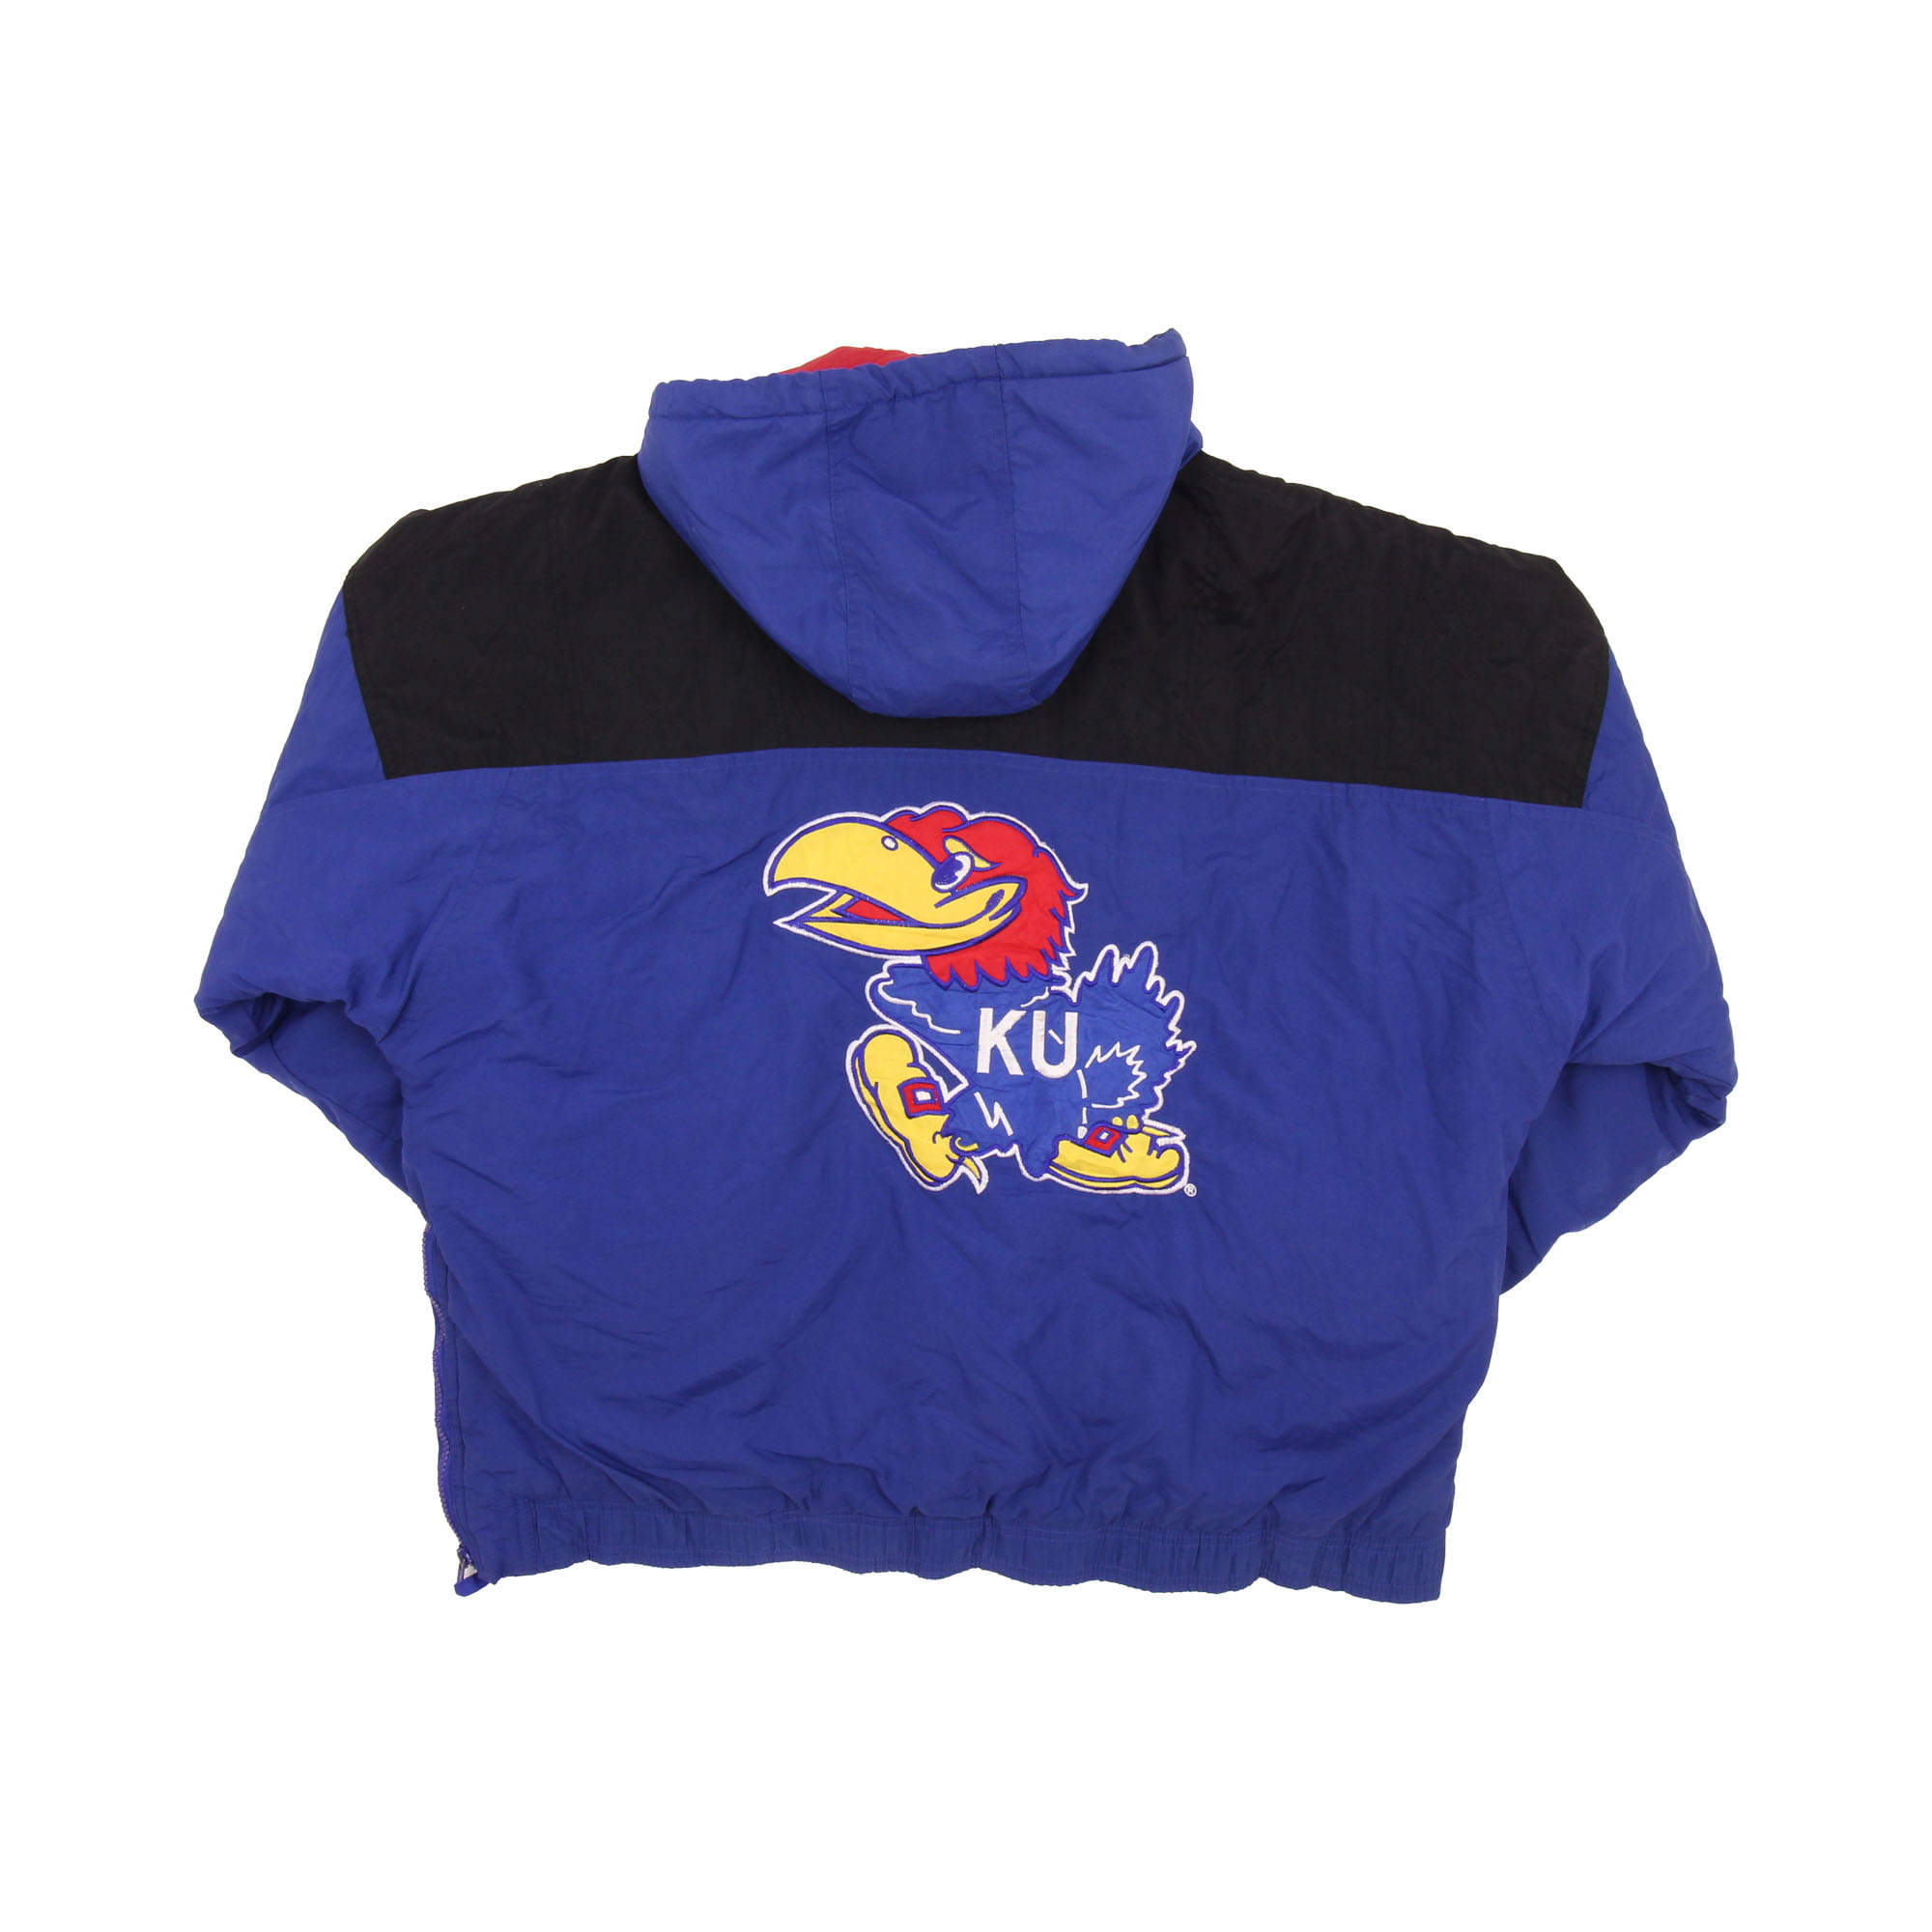 Kansas Jayhawks Vintage Warm Jacket -  L